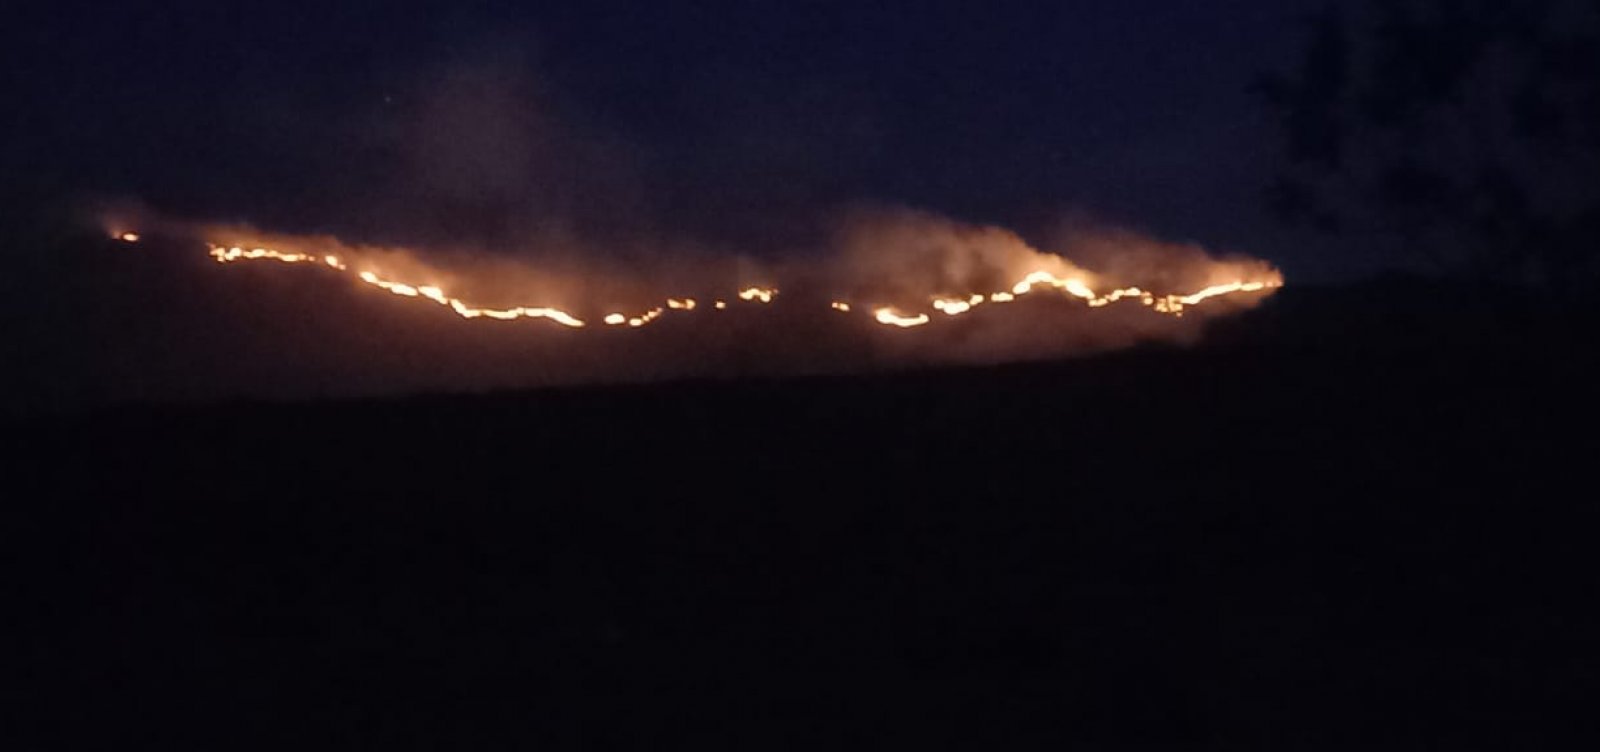 Incêndios florestais atingem a Chapada Diamantina; focos são registrados na região desde agosto